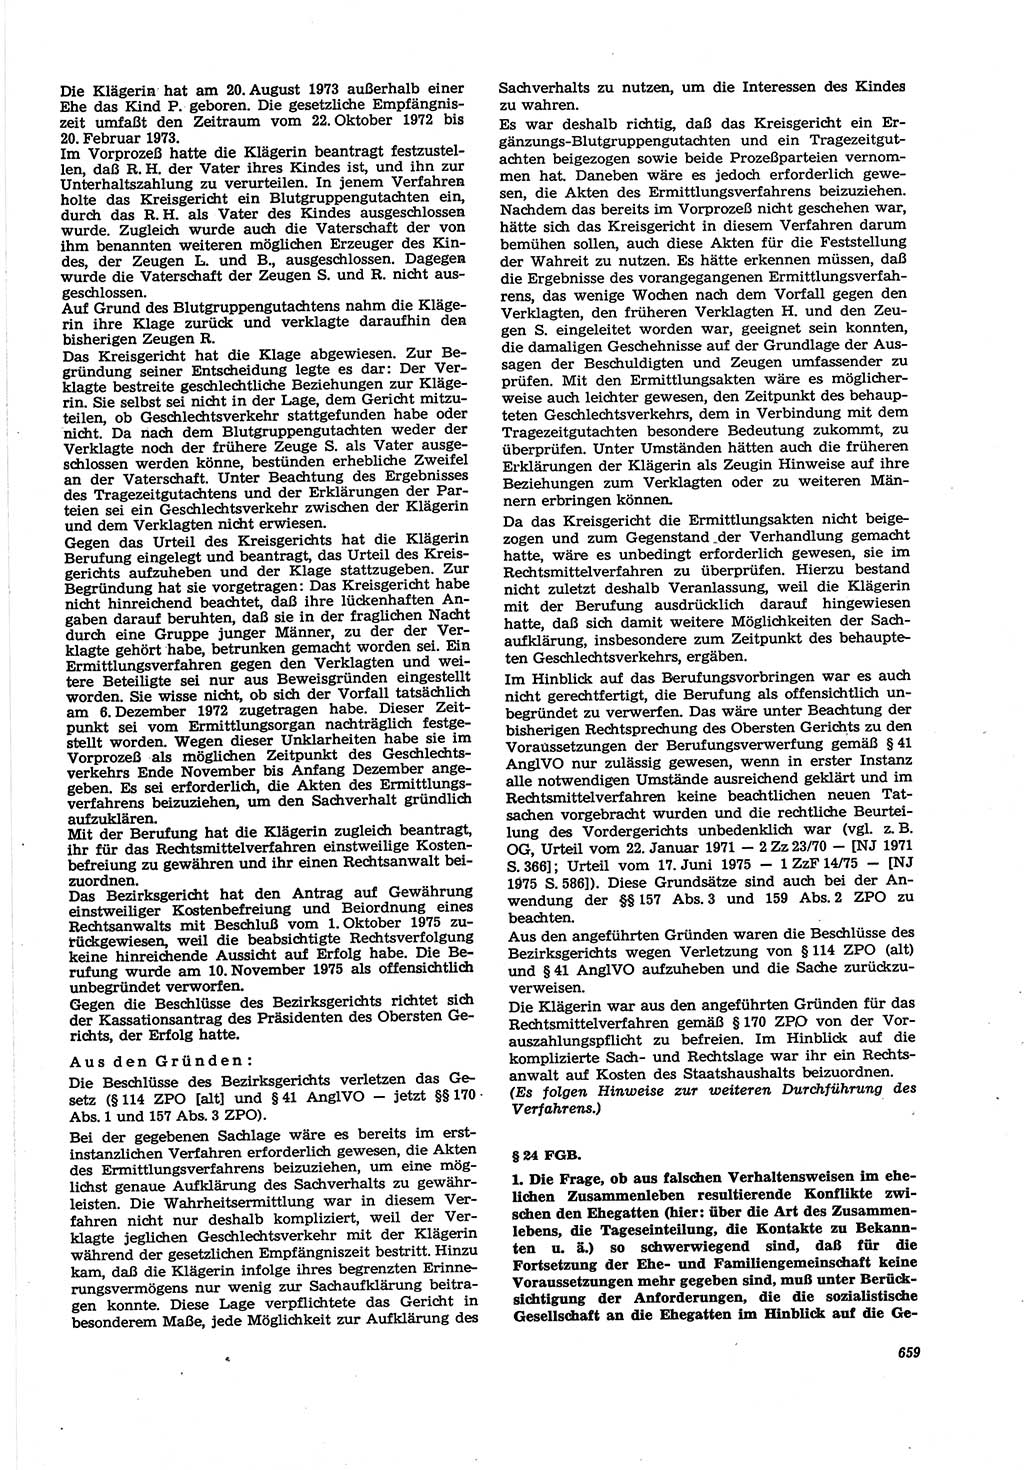 Neue Justiz (NJ), Zeitschrift für Recht und Rechtswissenschaft [Deutsche Demokratische Republik (DDR)], 30. Jahrgang 1976, Seite 659 (NJ DDR 1976, S. 659)